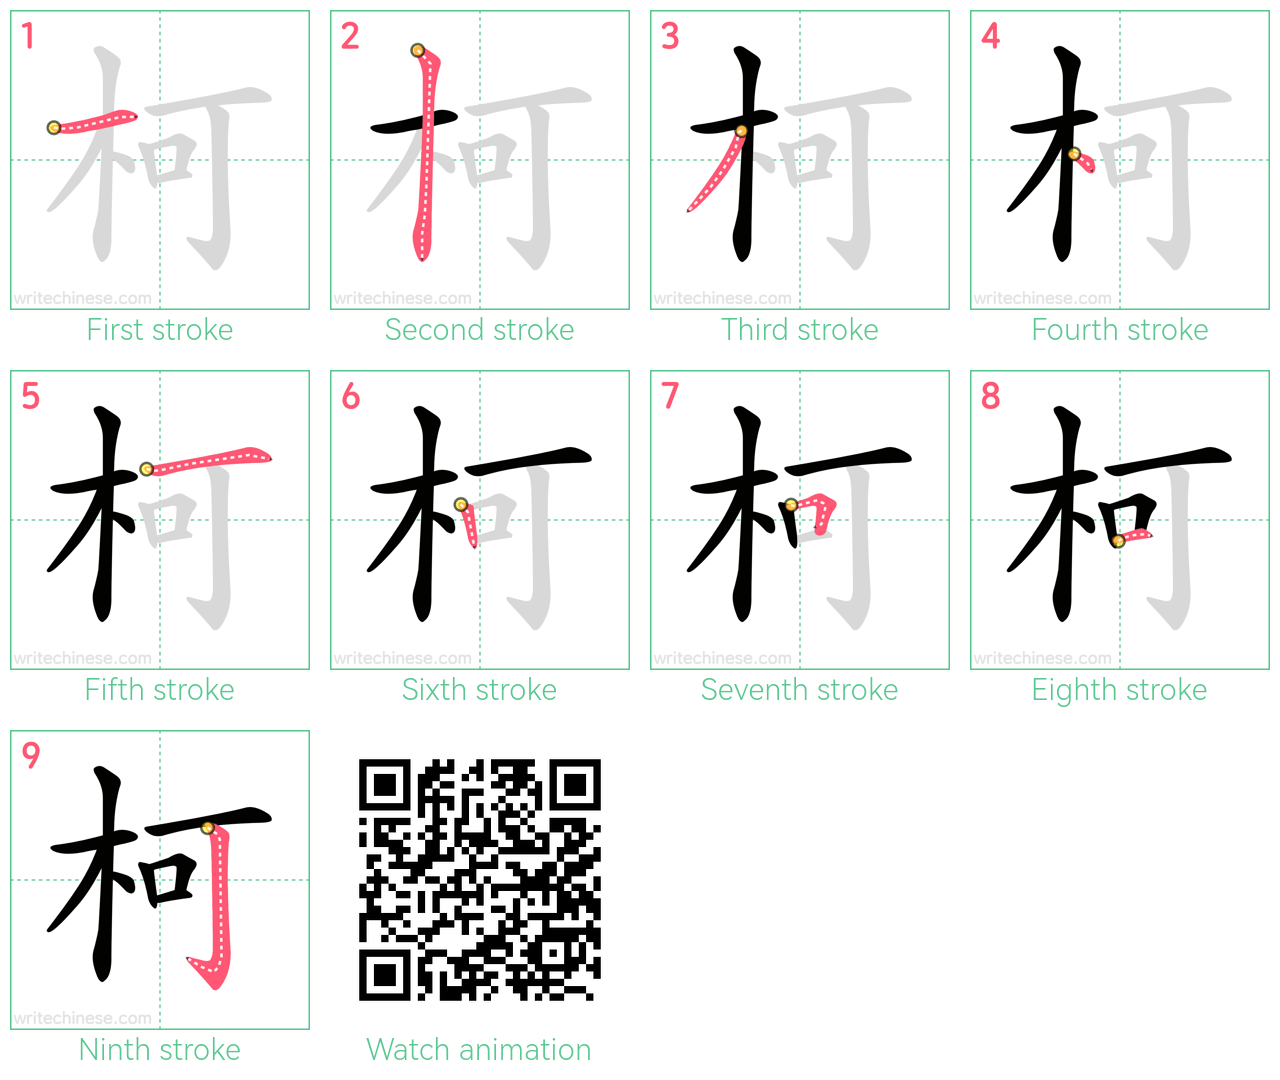 柯 step-by-step stroke order diagrams